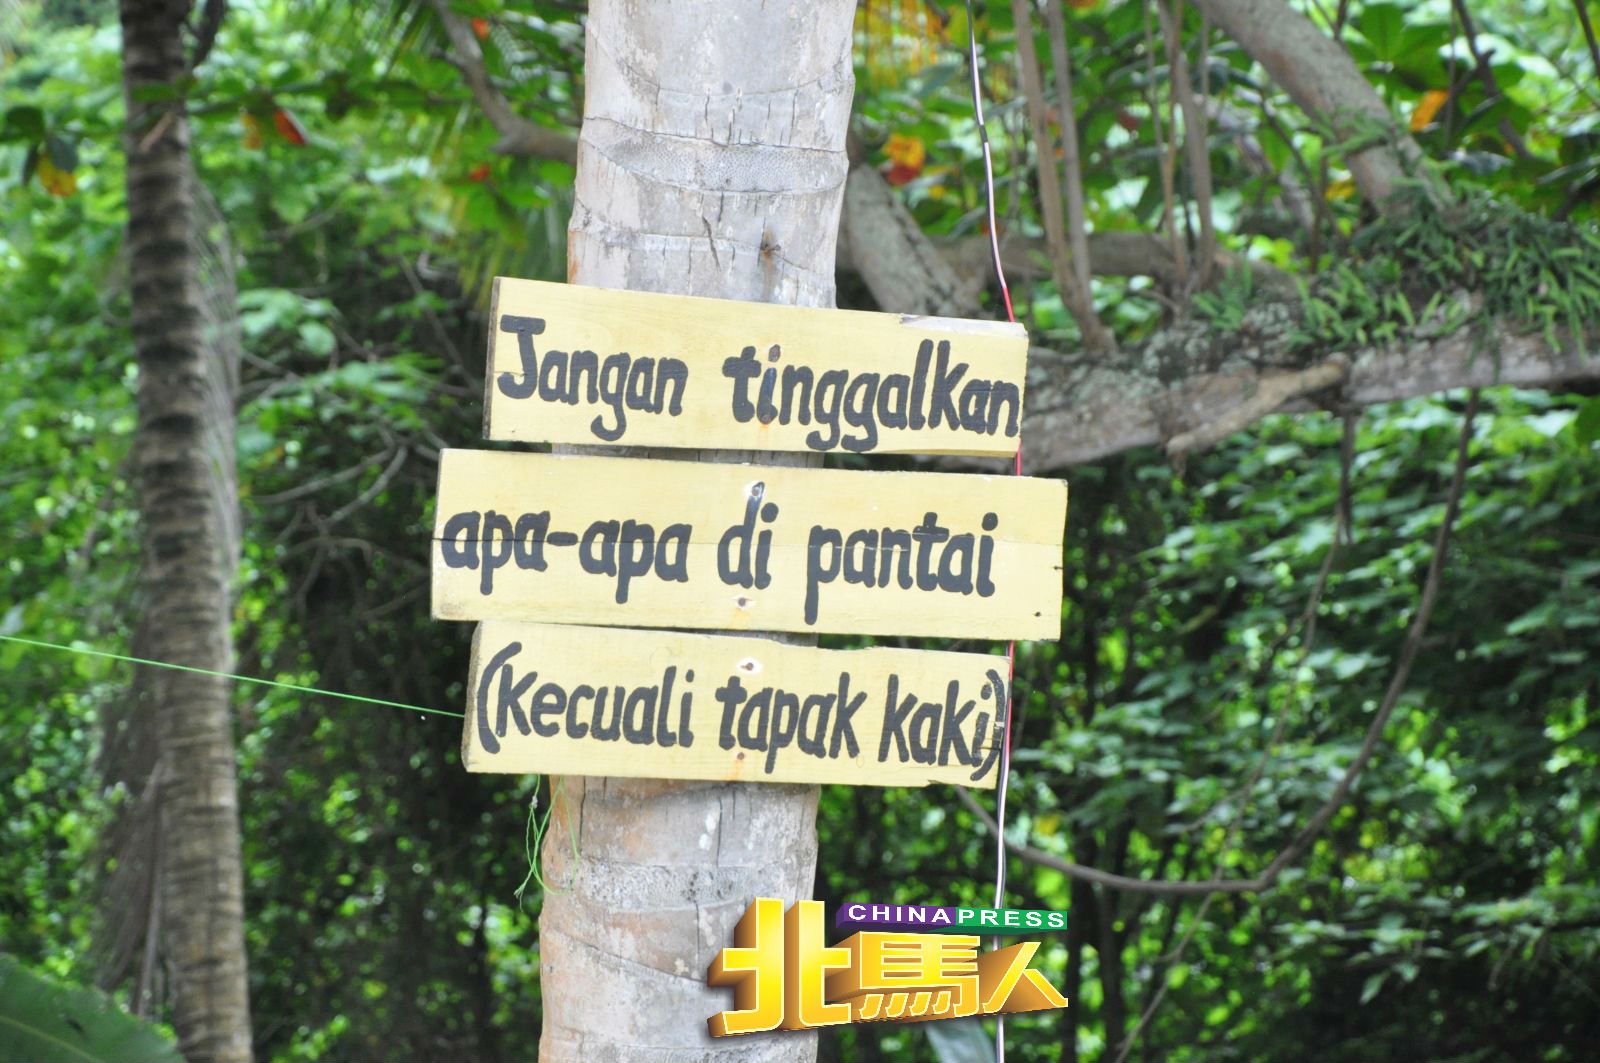 环保工作者在椰树上钉着“除了脚印，别留下任何东西在沙滩”的有趣留言。